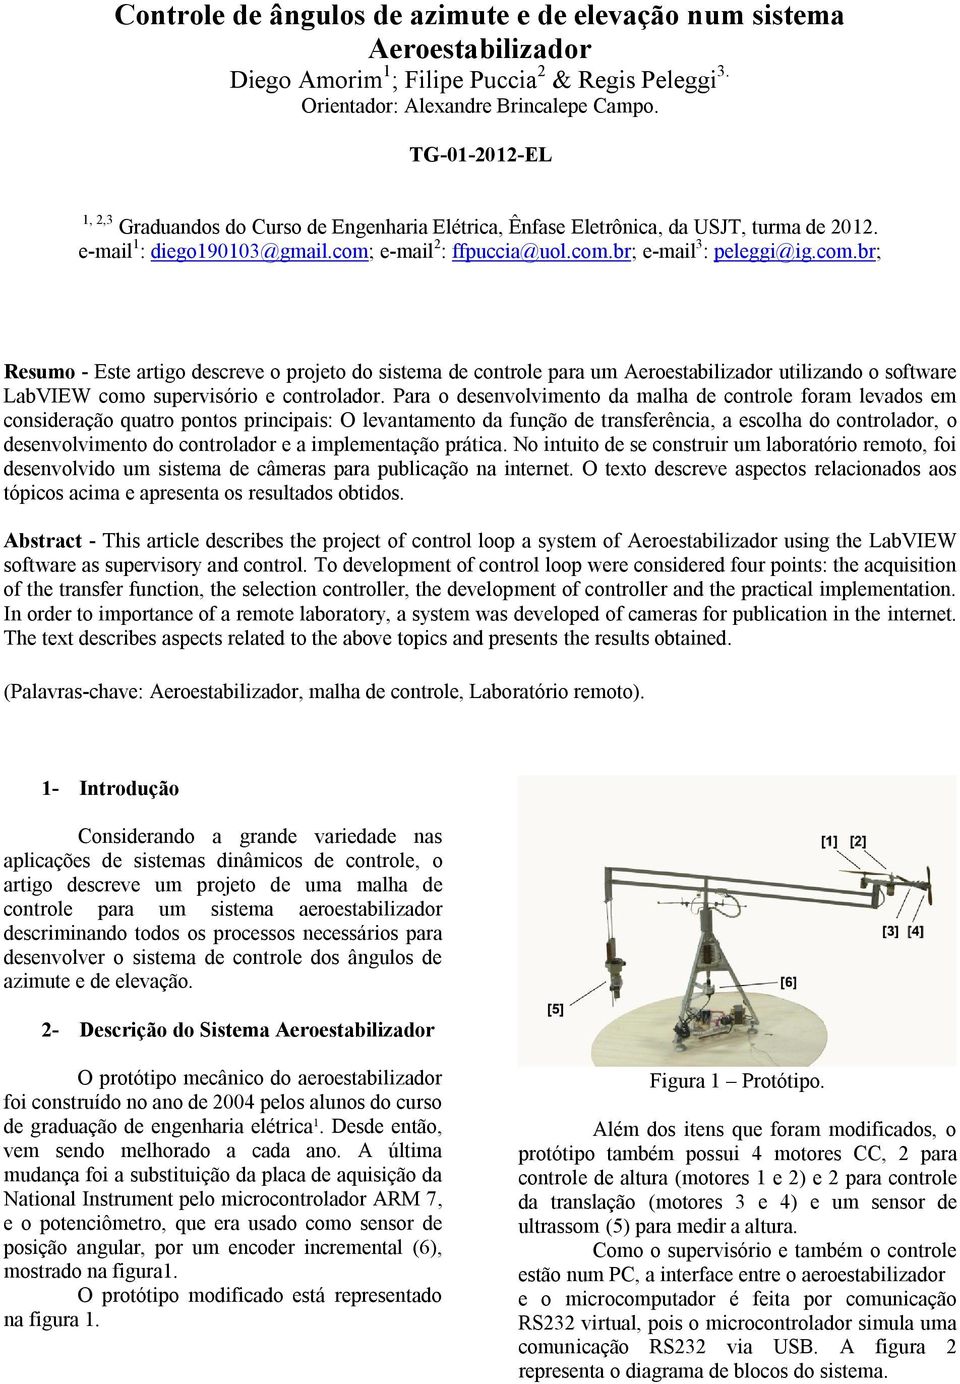 e-mail 2 : ffpuccia@uol.com.br; e-mail 3 : peleggi@ig.com.br; Resumo - Este artigo descreve o projeto do sistema de controle para um Aeroestabilizador utilizando o software LabVIEW como supervisório e controlador.